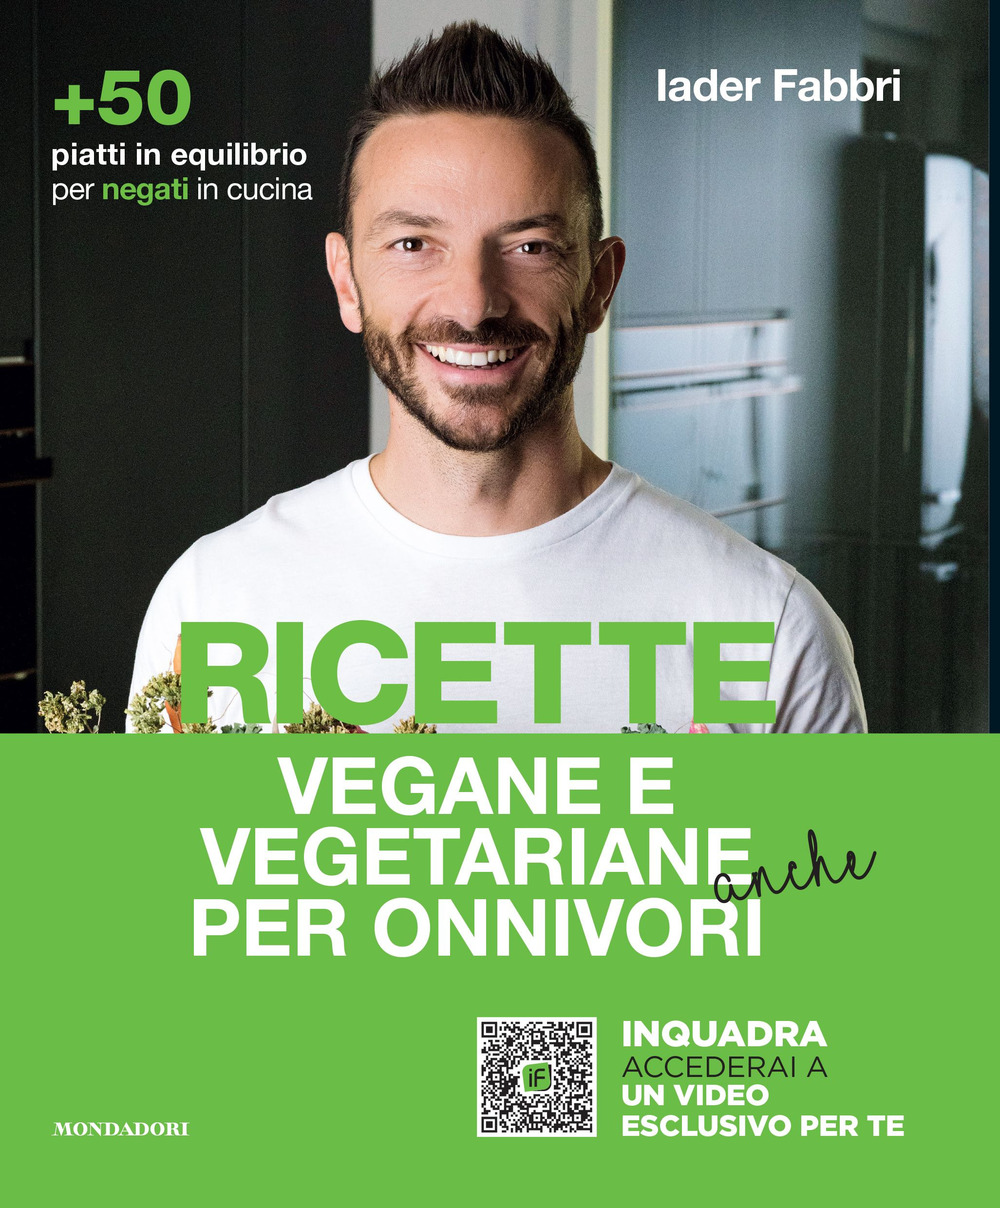 Image of Ricette vegane e vegetariane anche per onnivori